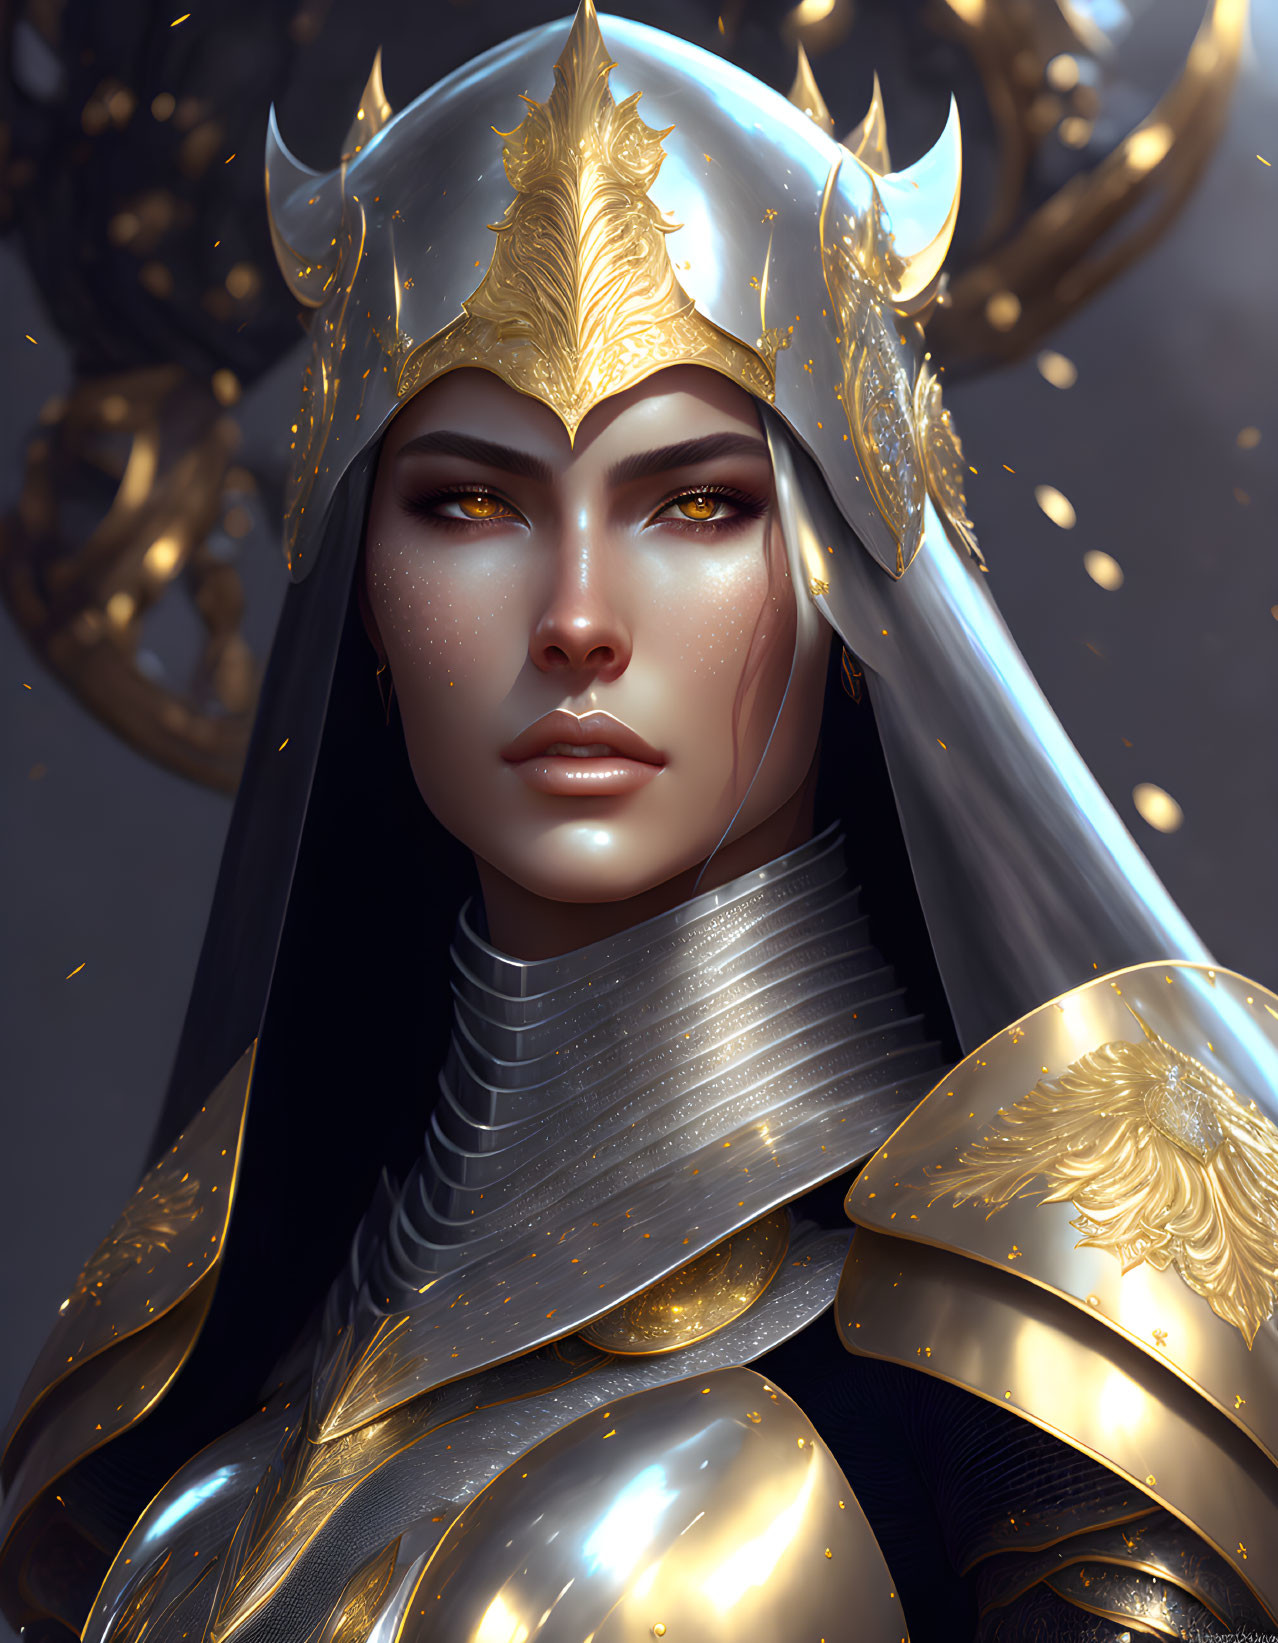 Golden-armored female warrior in ornate helmet on dark background